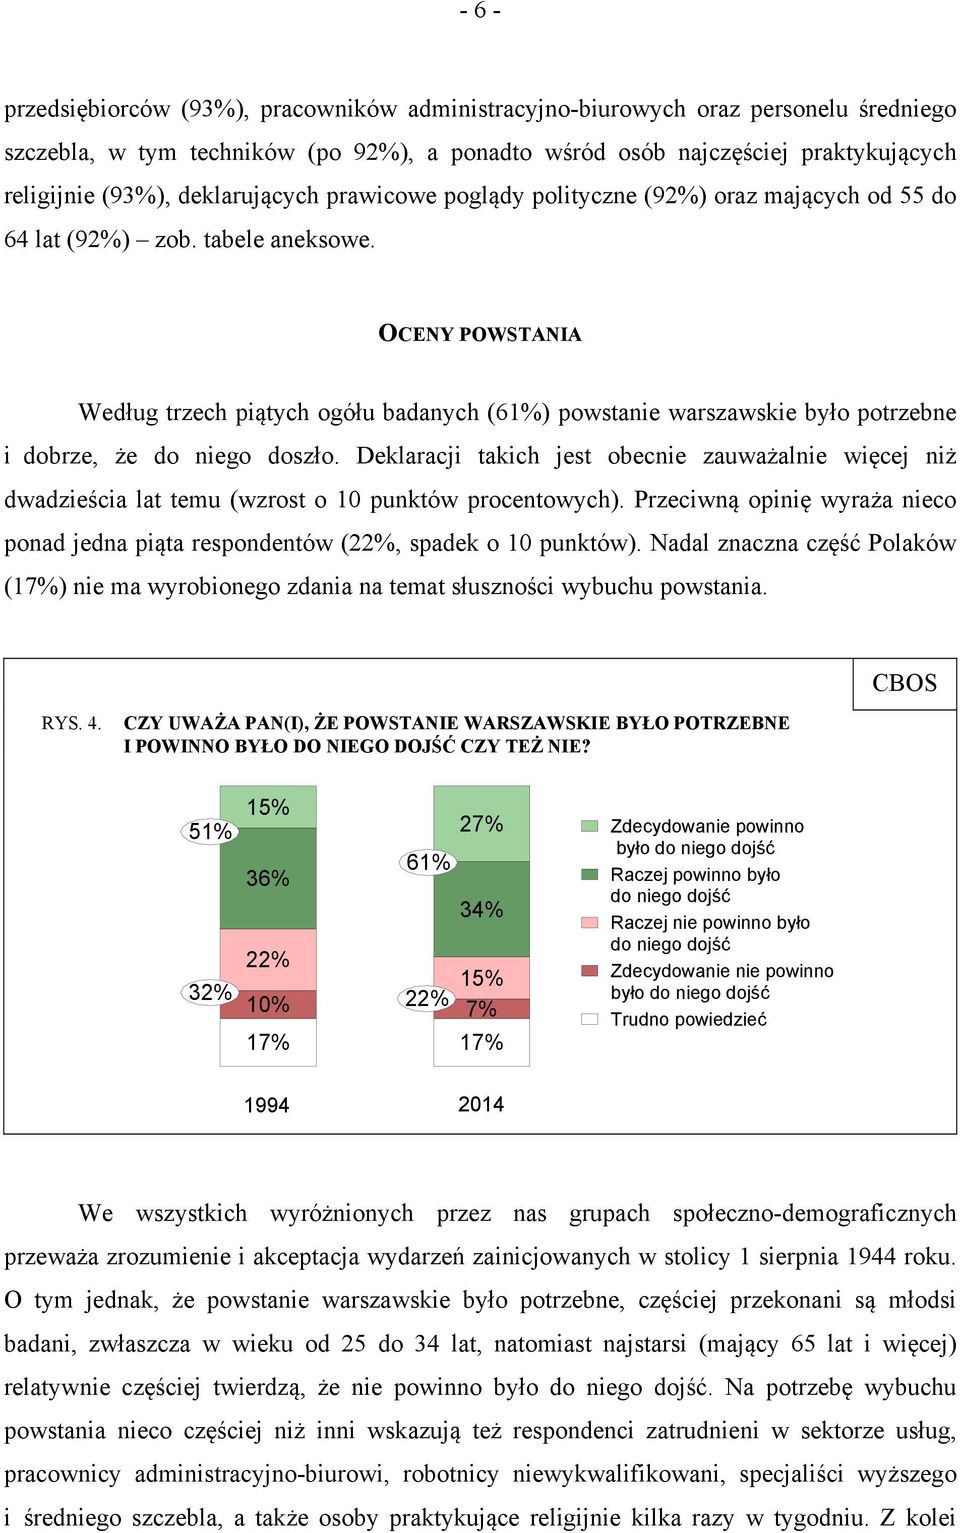 OCENY POWSTANIA Według trzech piątych ogółu badanych (61%) powstanie warszawskie było potrzebne i dobrze, że do niego doszło.